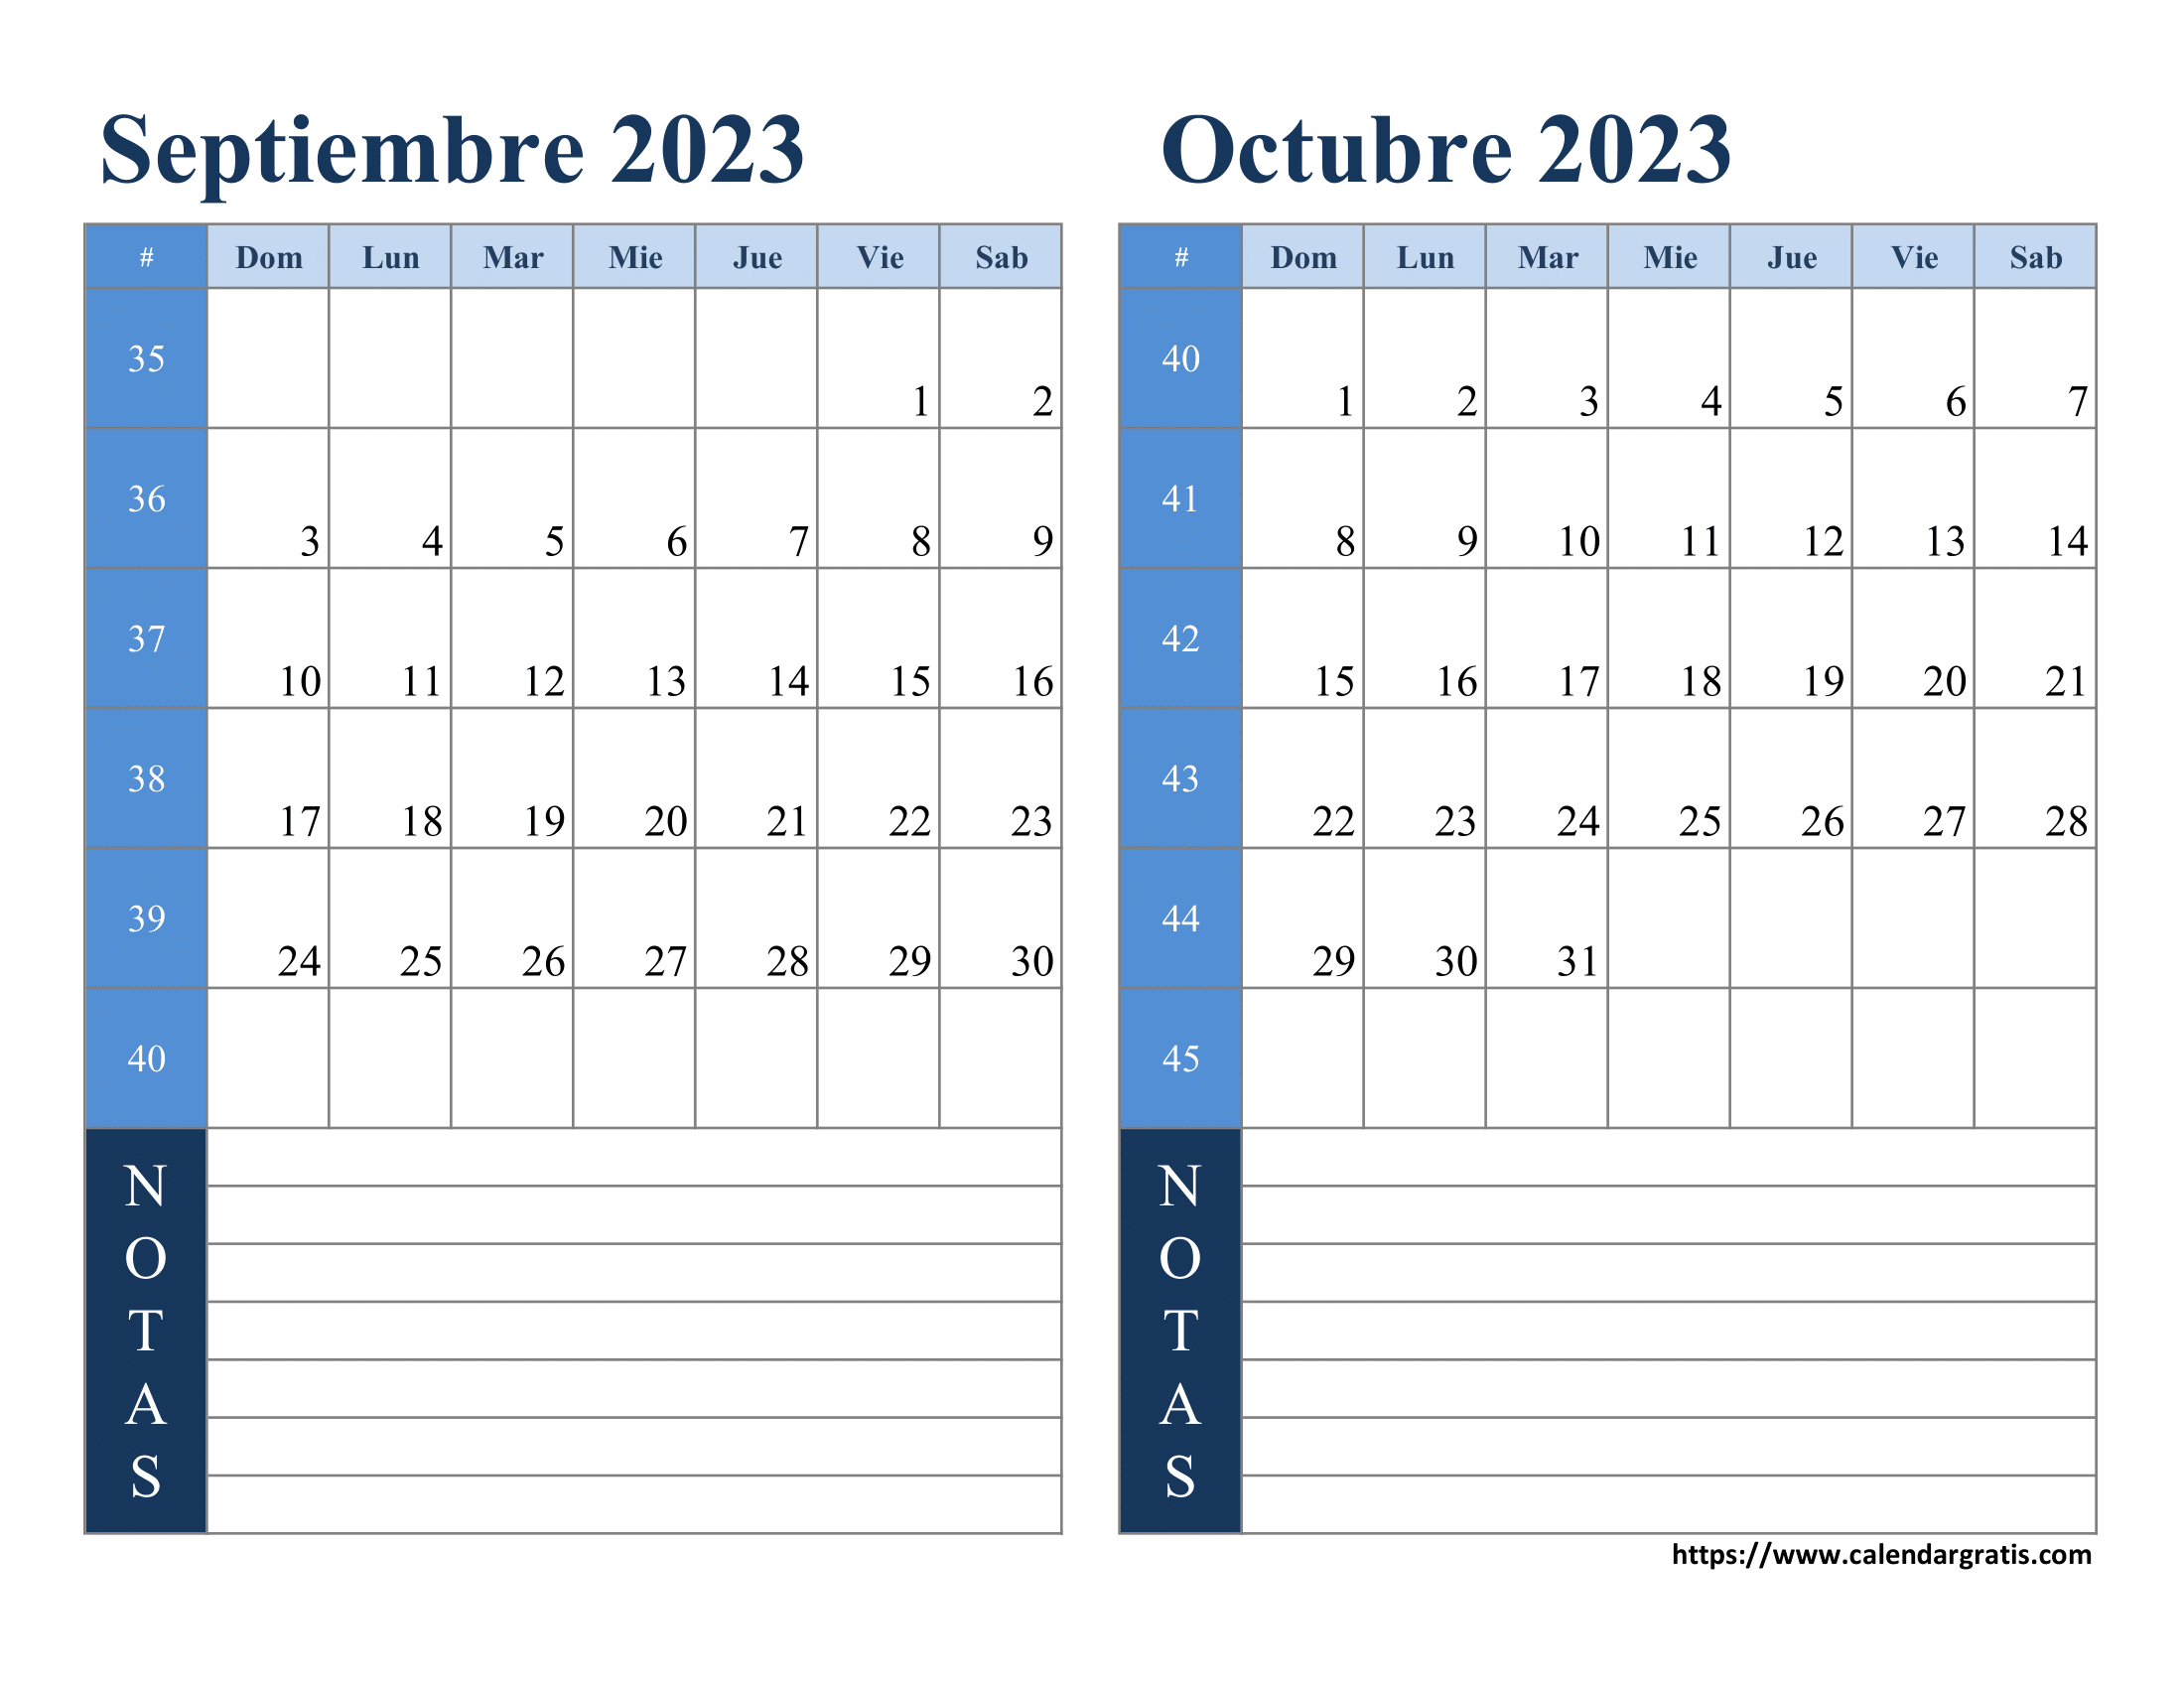 Vista digital del Calendario Septiembre y Octubre 2023 en una tablet